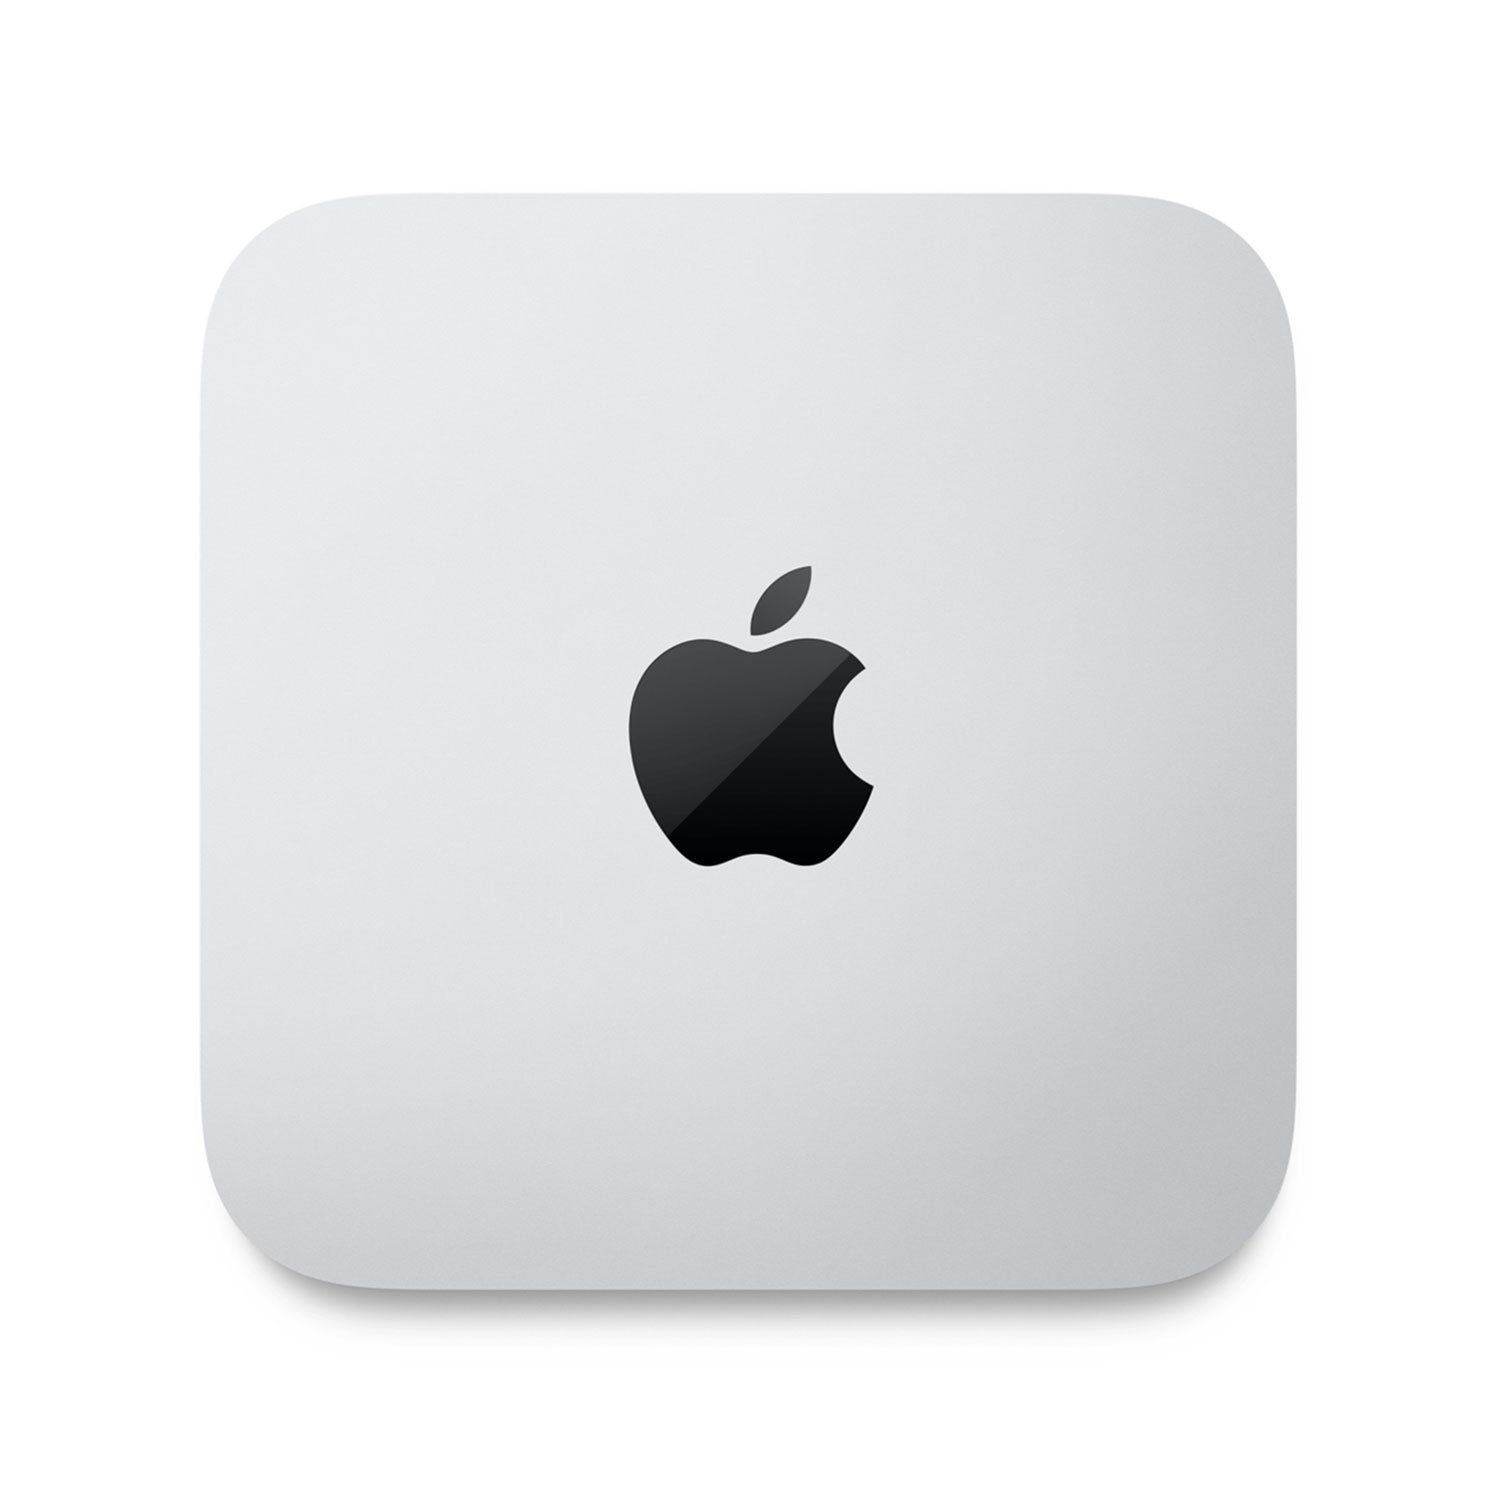 مک مینی M1 رم 16 حافظه 256گیگ Apple MacMini CTO M1 2020 16GB 256G (8C-8C)